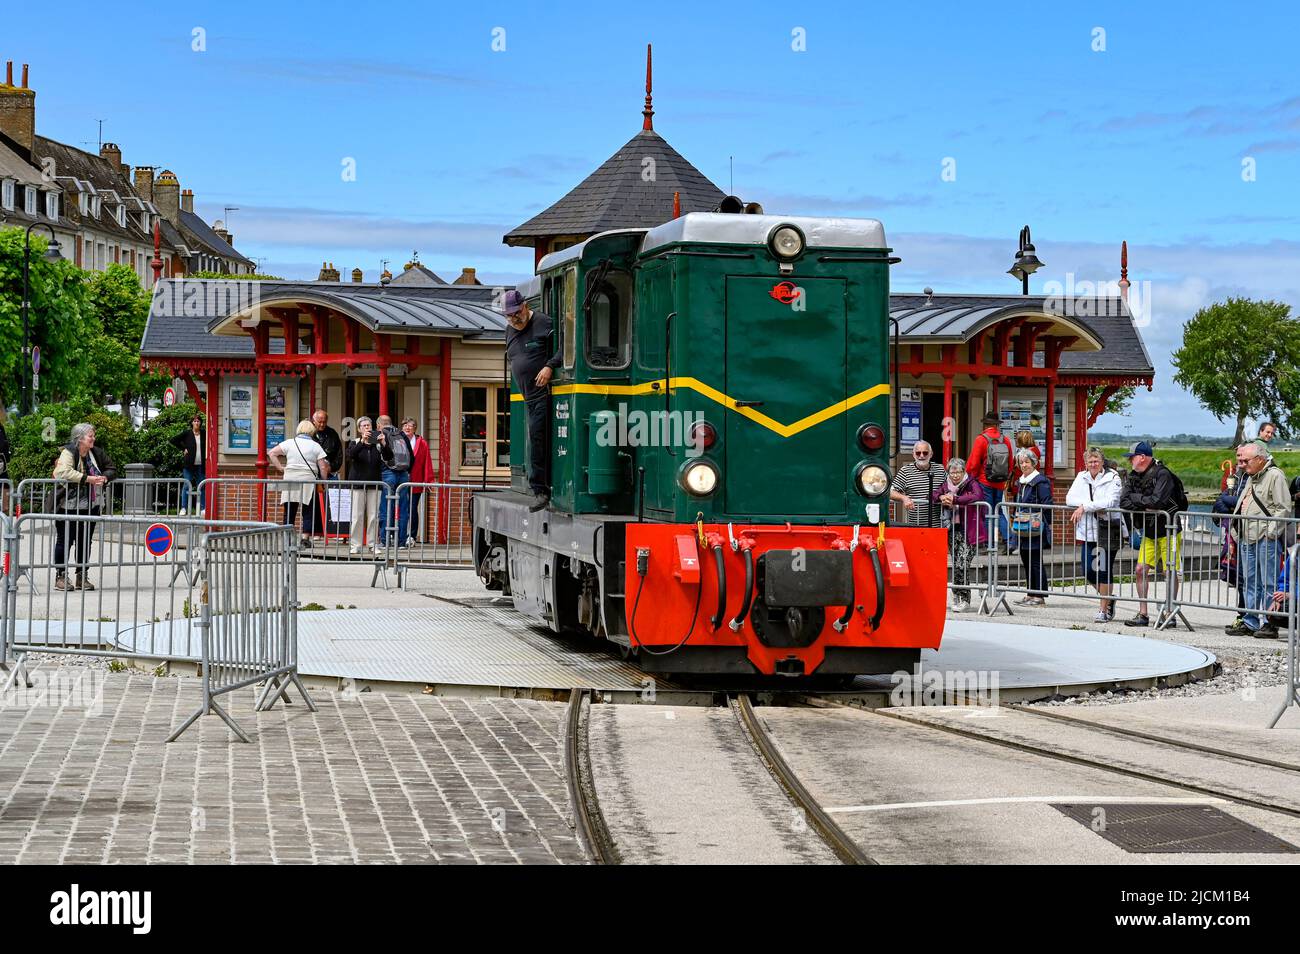 Locomotive of the museum railway Chemin de Fer de la Baie de Somme at Saint-Valery-sur-Somme, Picardie, France Stock Photo